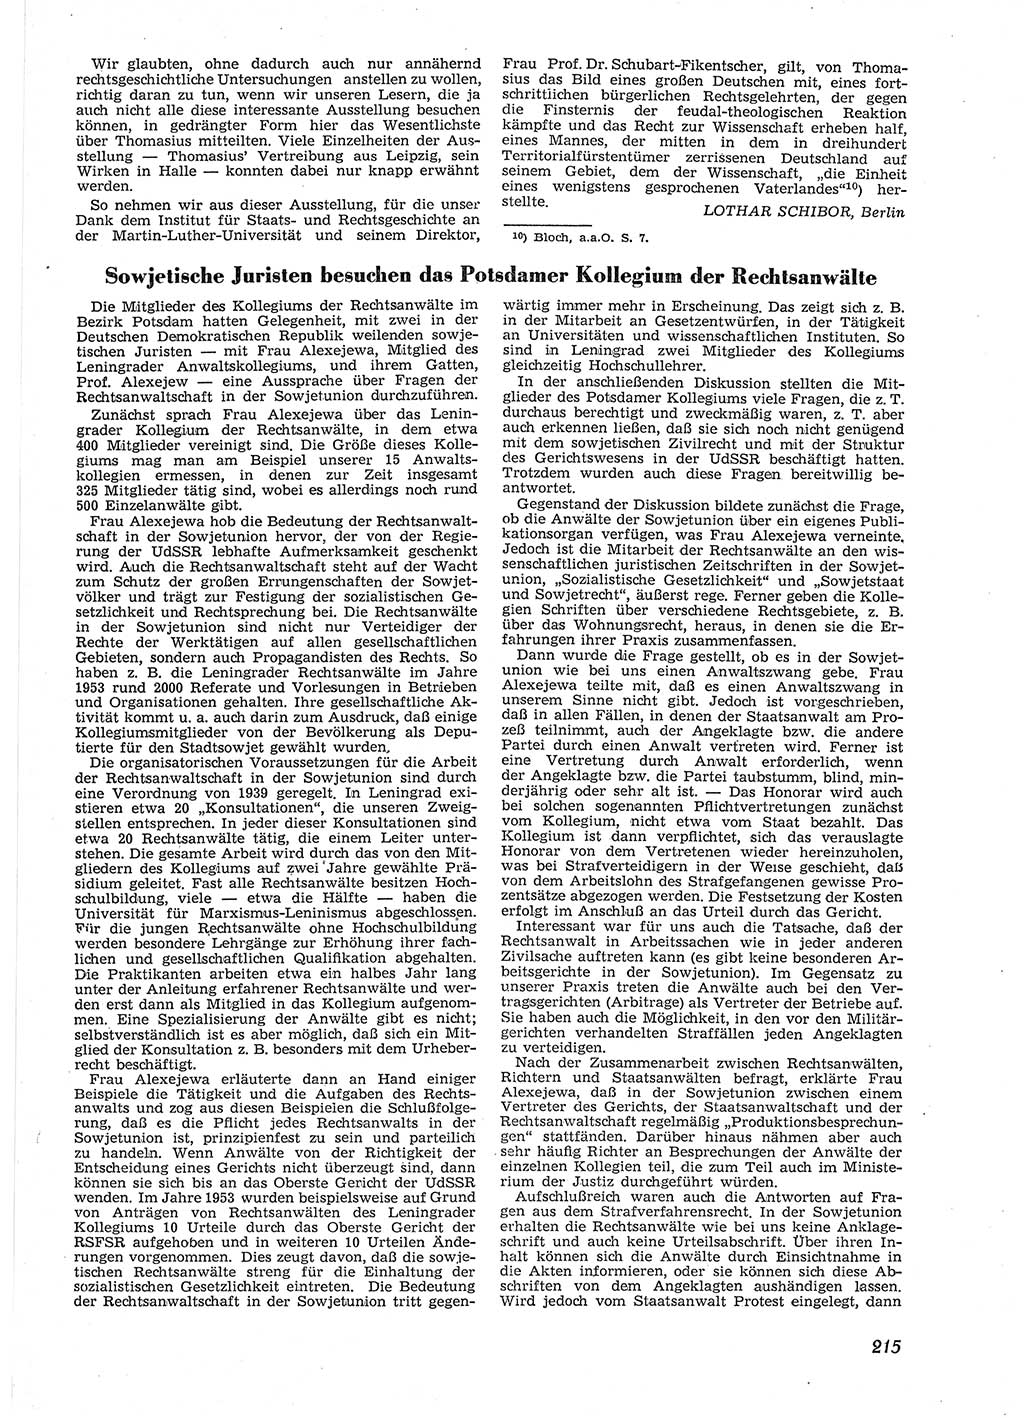 Neue Justiz (NJ), Zeitschrift für Recht und Rechtswissenschaft [Deutsche Demokratische Republik (DDR)], 9. Jahrgang 1955, Seite 215 (NJ DDR 1955, S. 215)